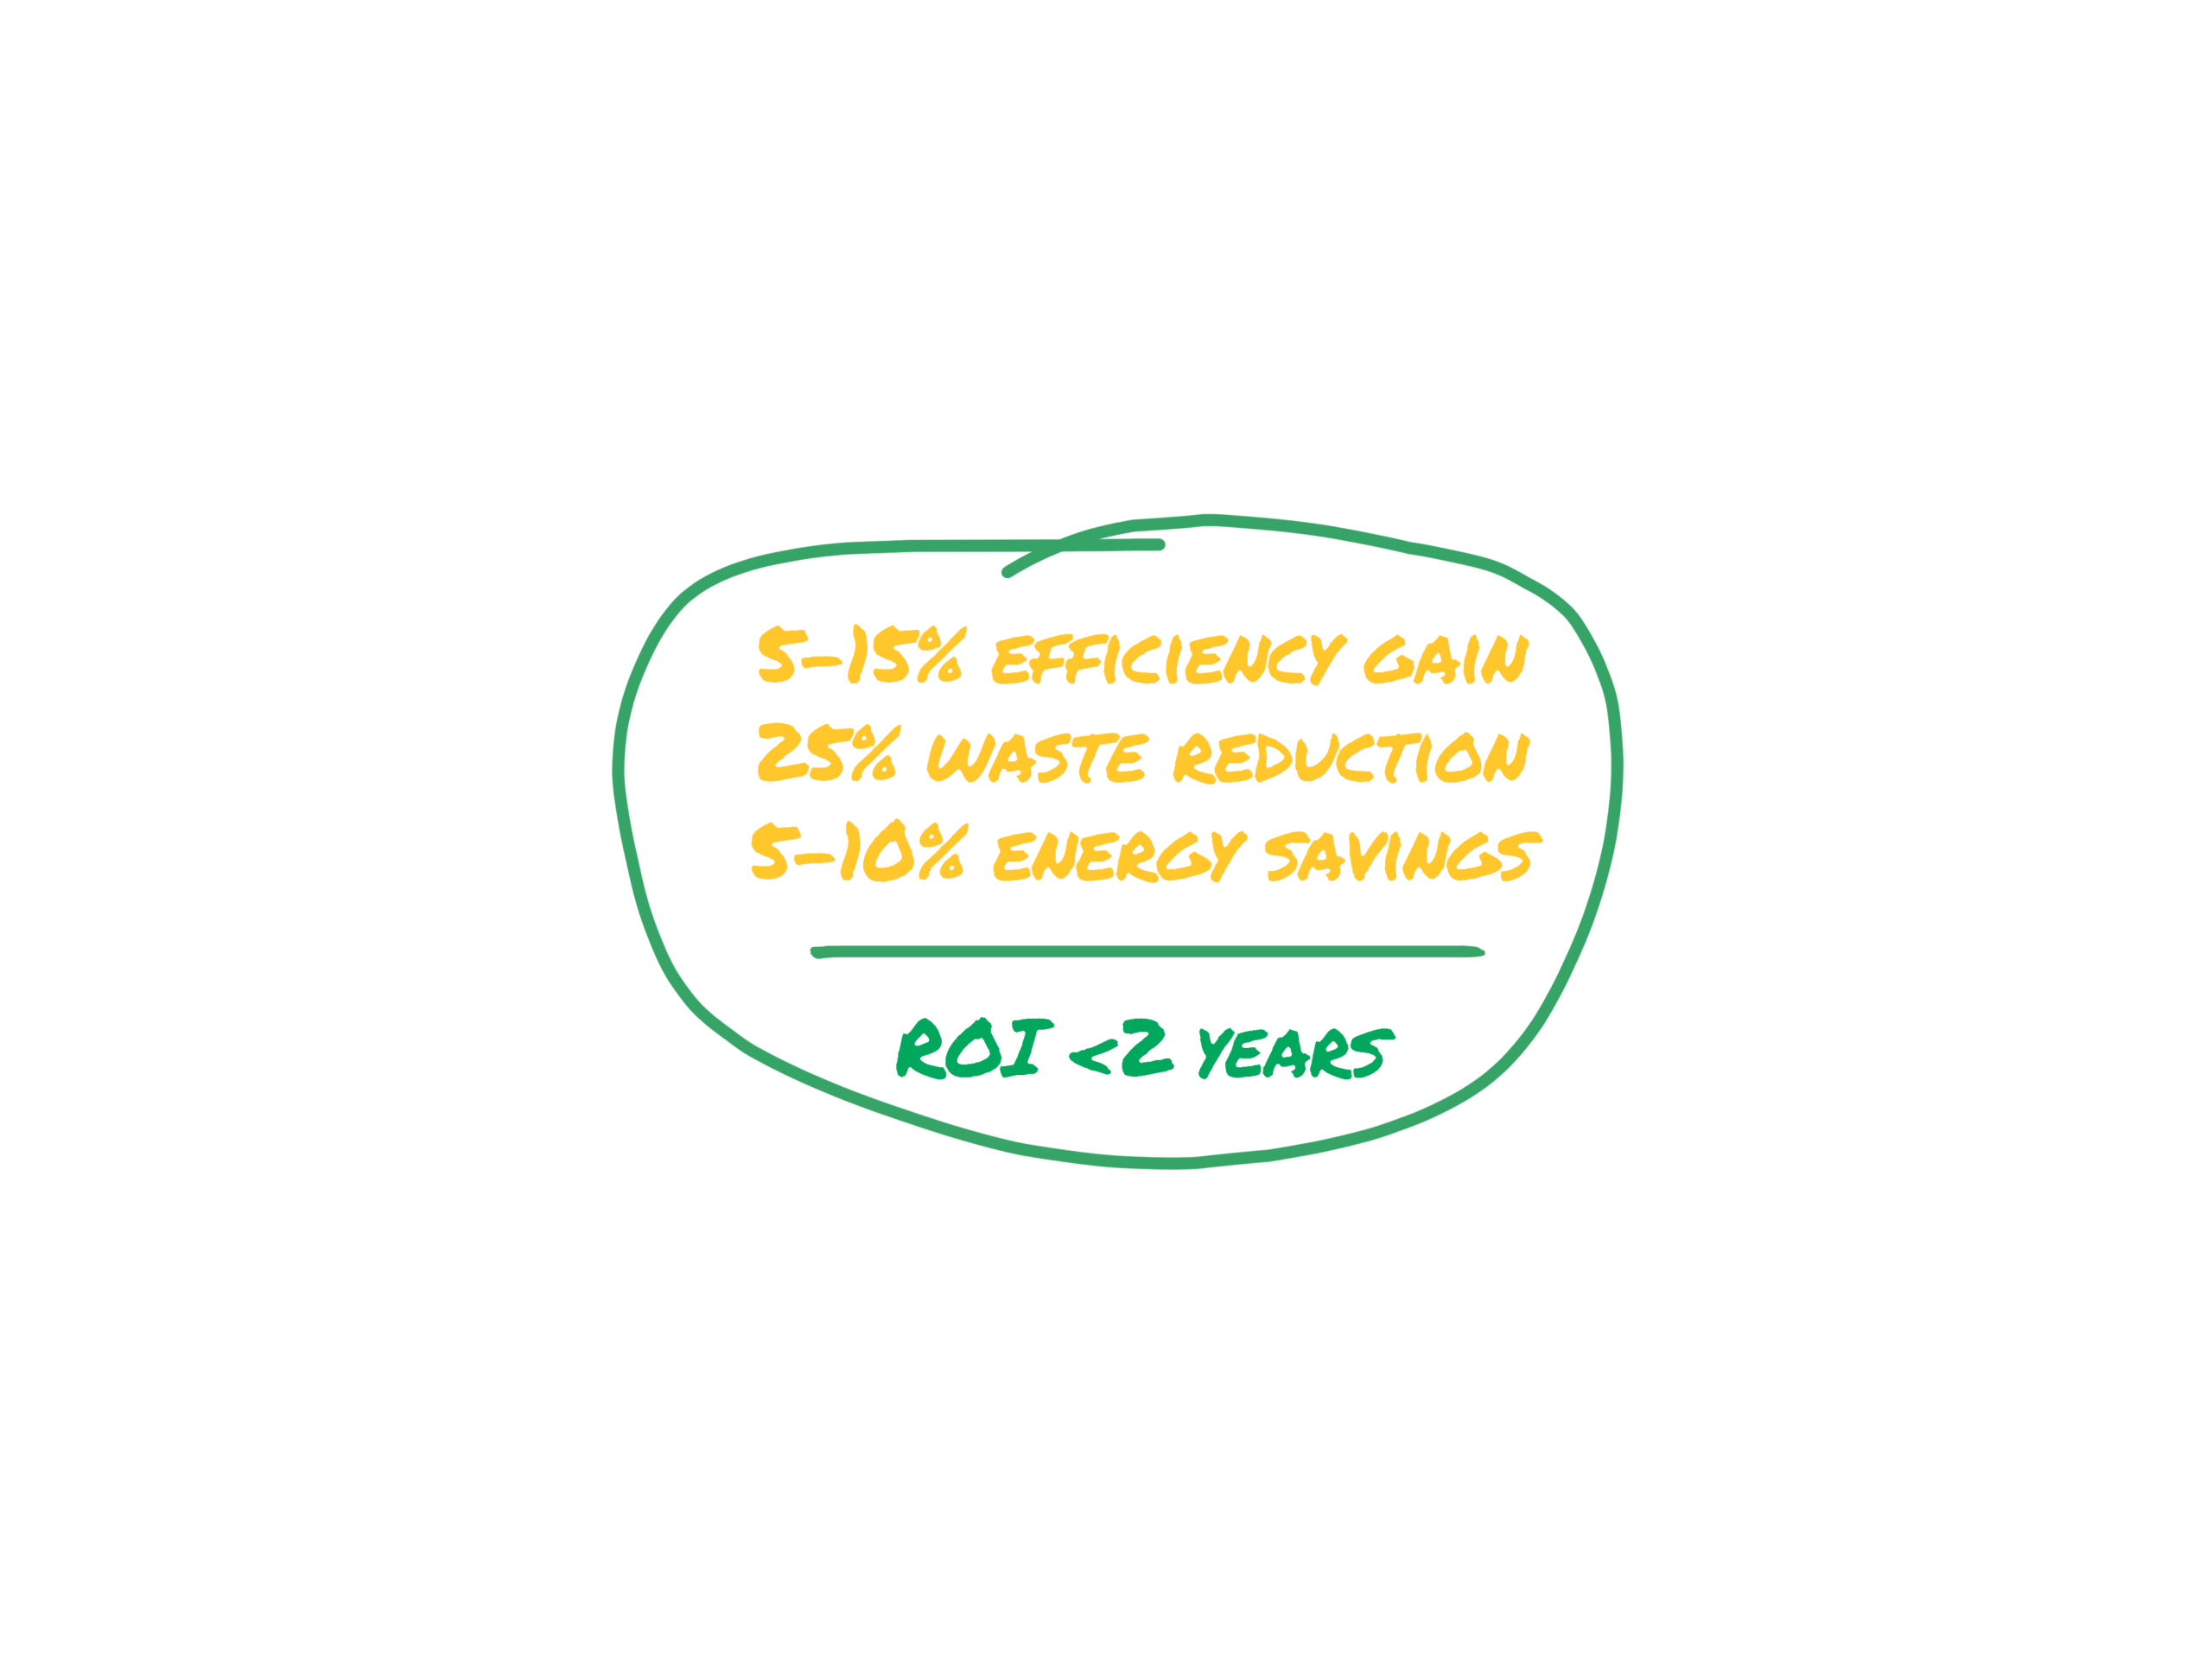 5-15% efficiency gain + 25% waste reduction + 5-10% energy savings = ROI <2 years